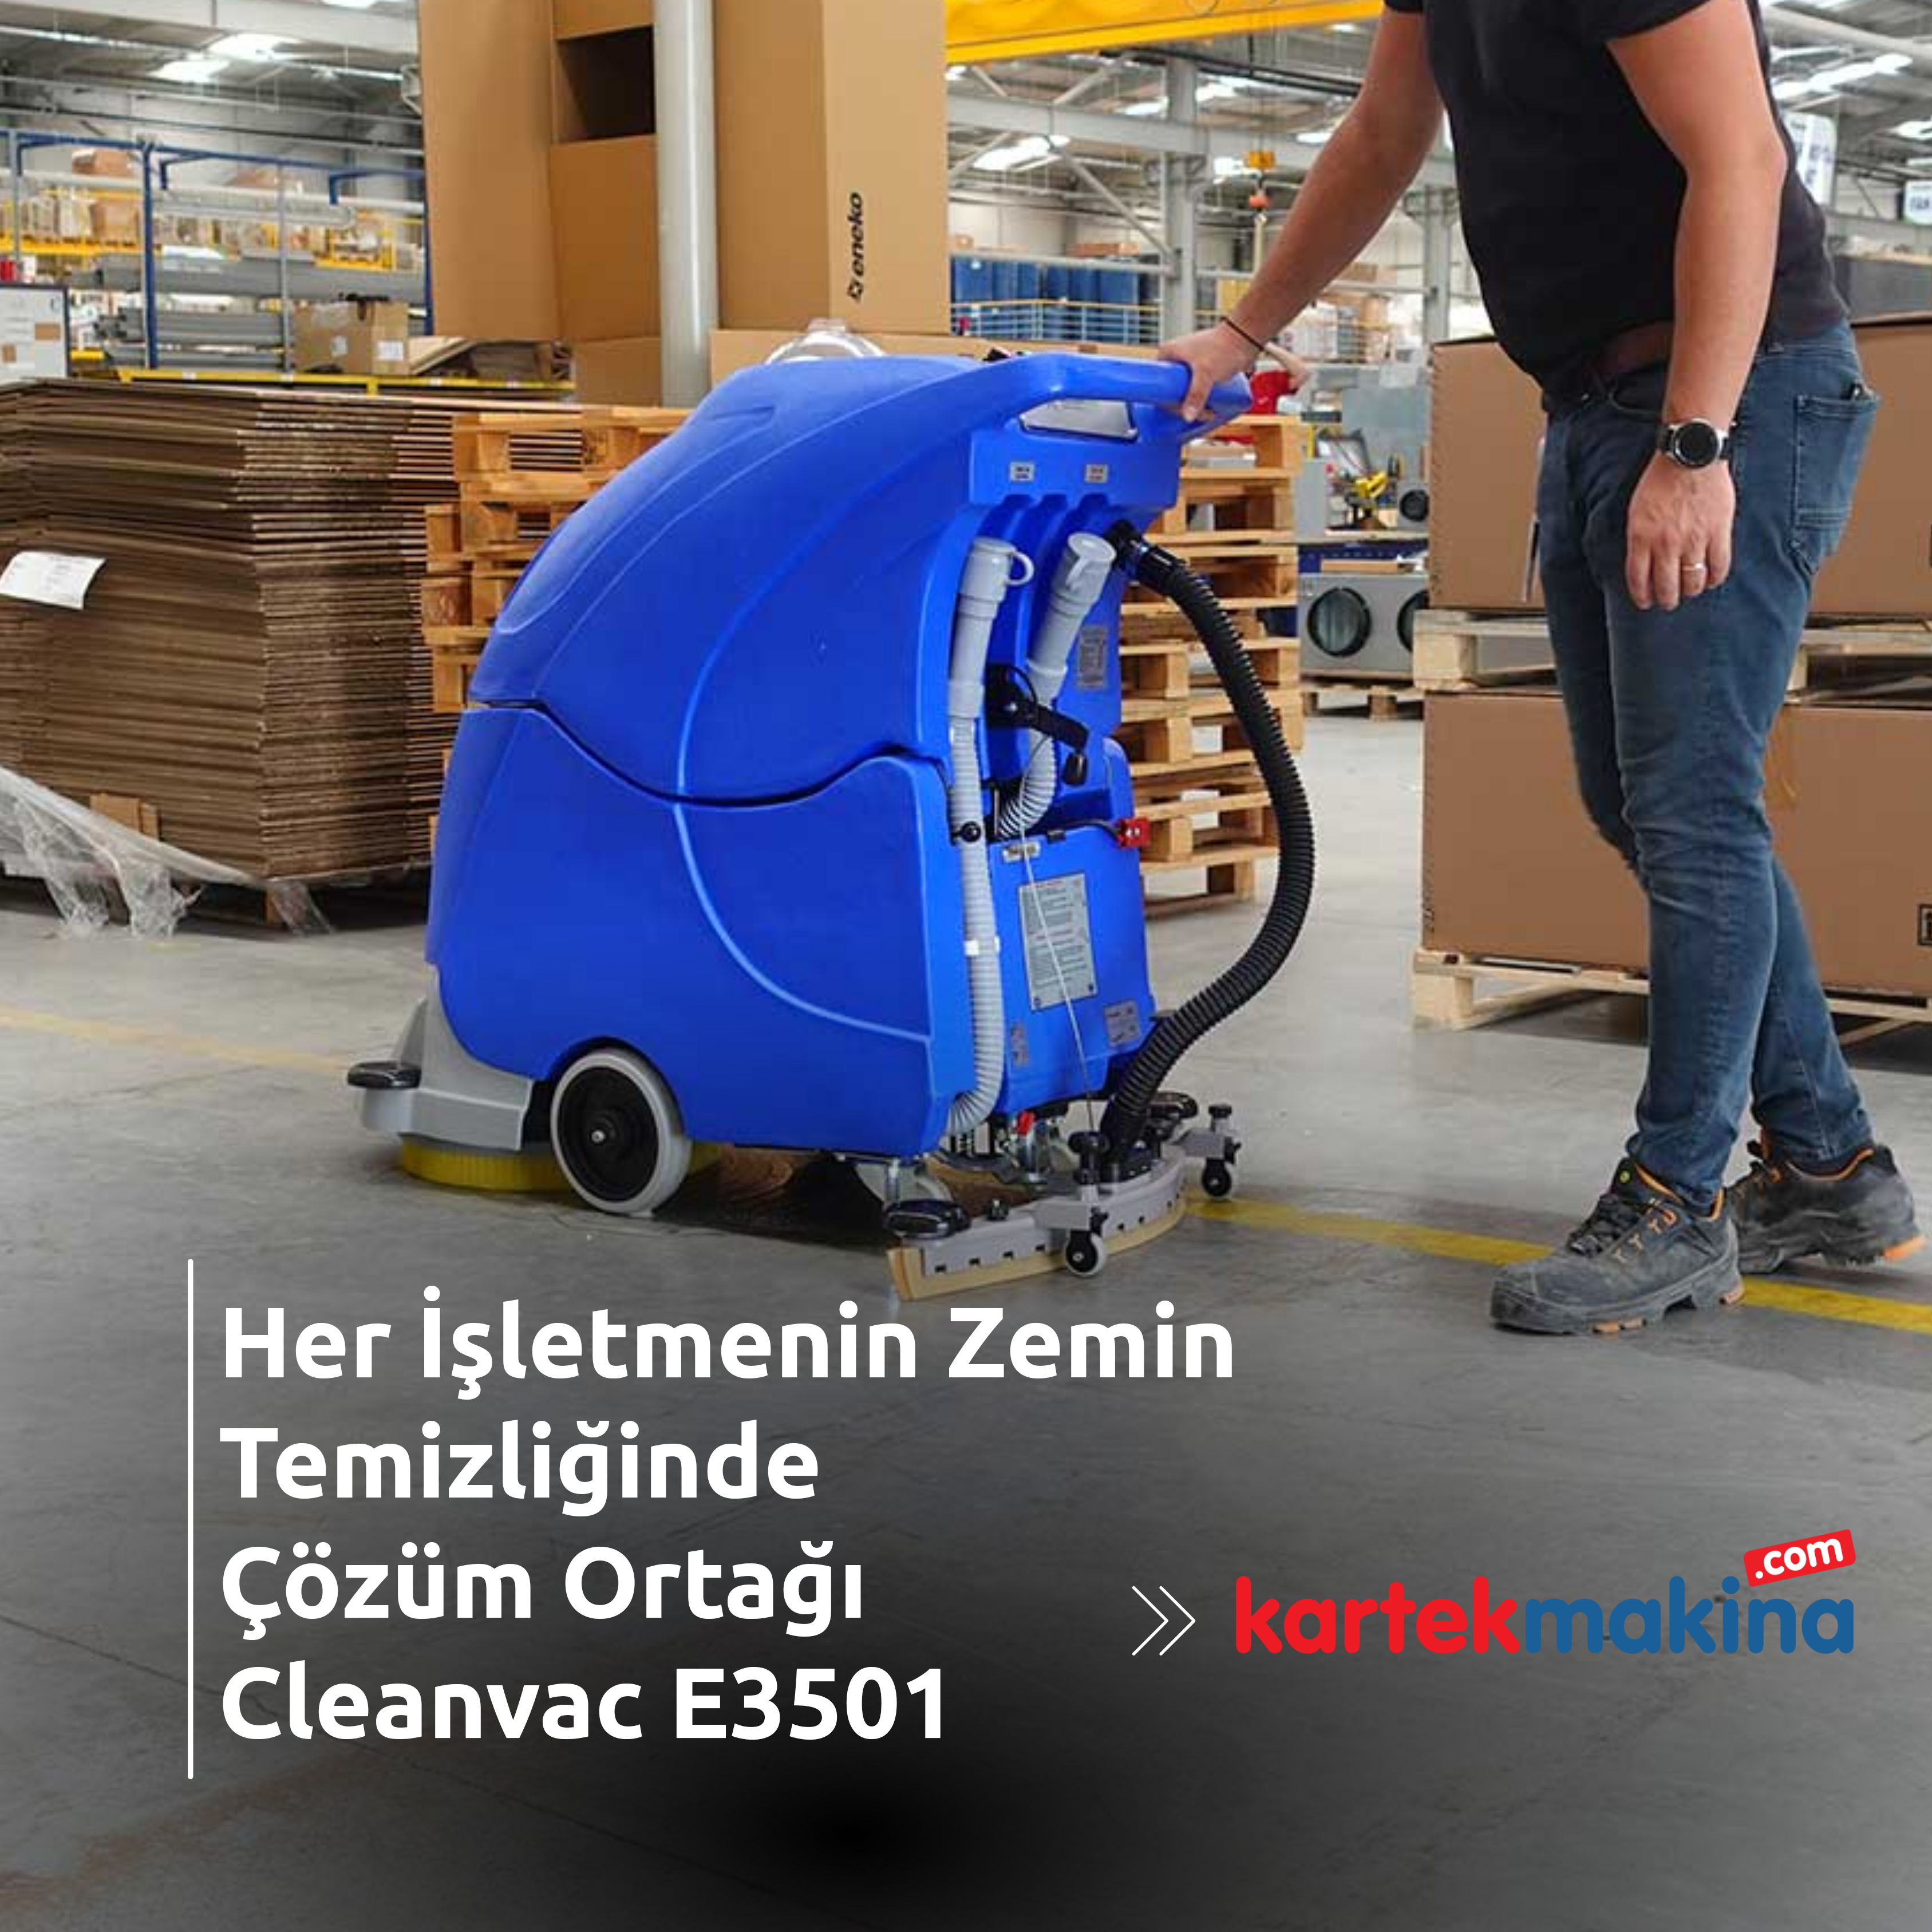 Her İşletmenin Zemin Temizliğinde Çözüm Ortağı Cleanvac E3501 - Her İşletmenin Zemin Temizliğinde Çözüm Ortağı Cleanvac E3501